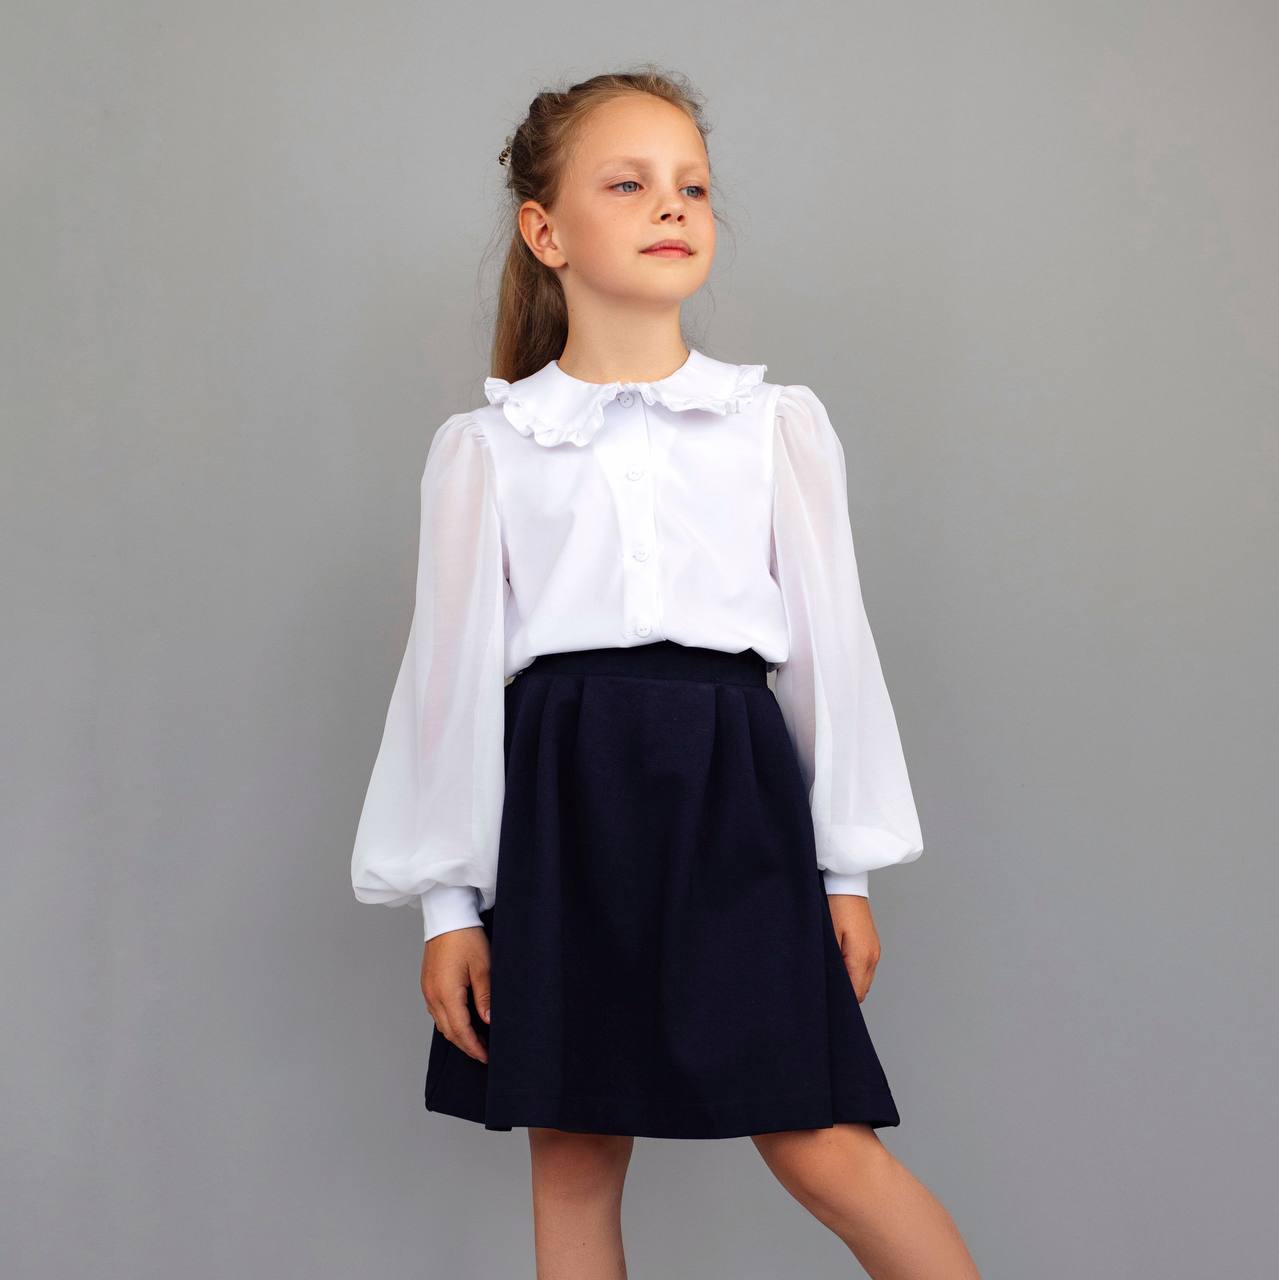 Купить юбки для девочек в интернет магазине gromograd.ru